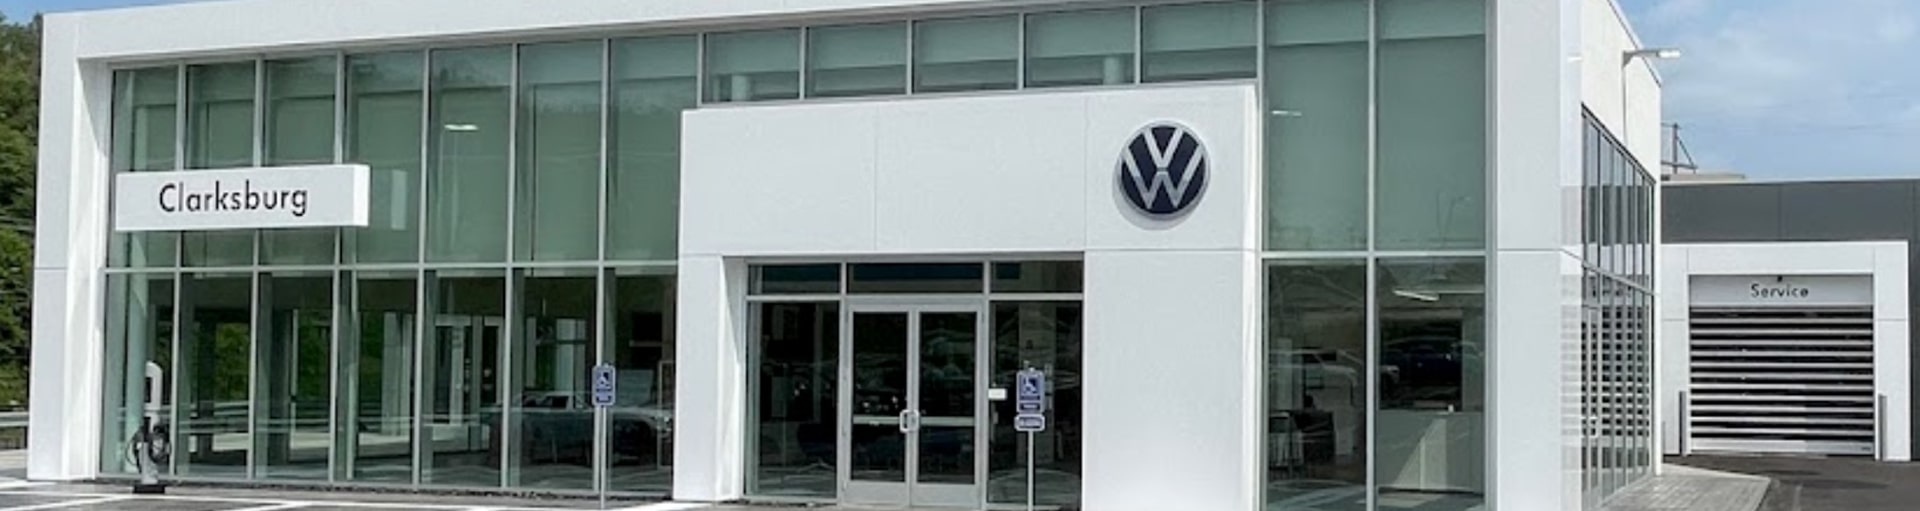 Volkswagen Clarksburg Alignment Services